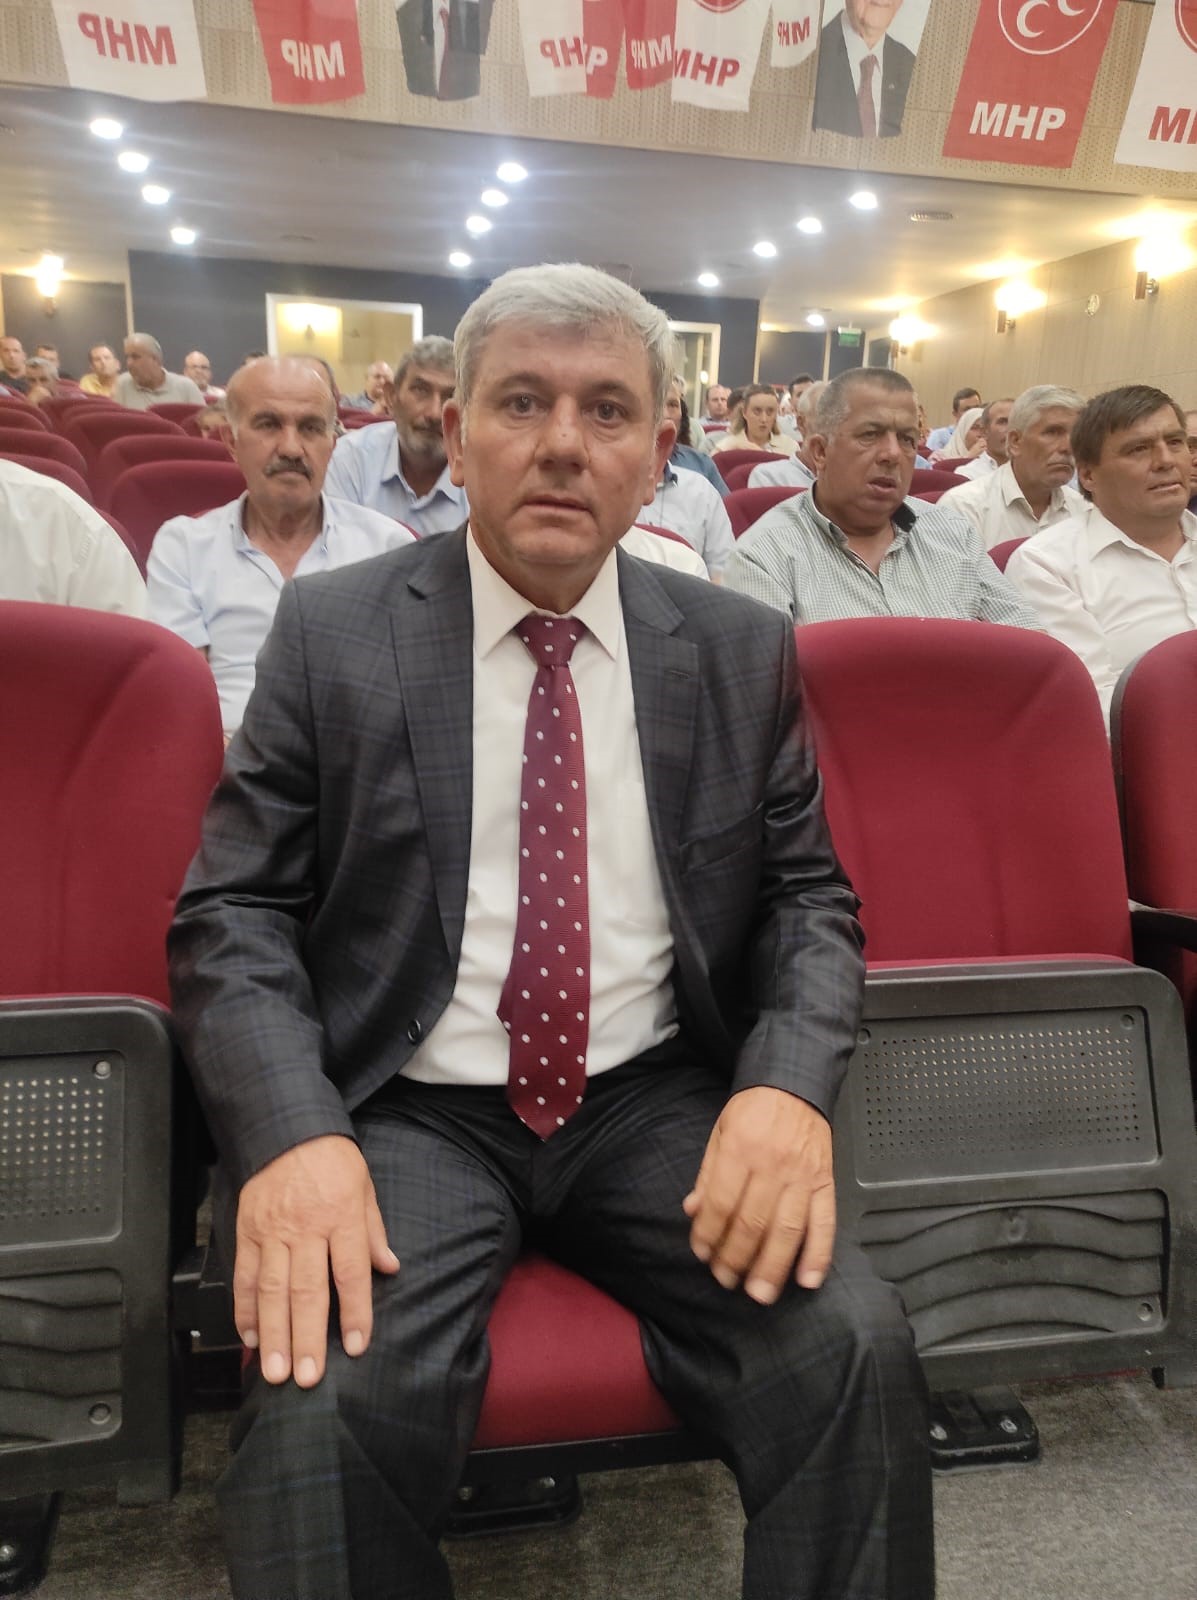 MHP selendi ilçe başkanı mehmet karabulut